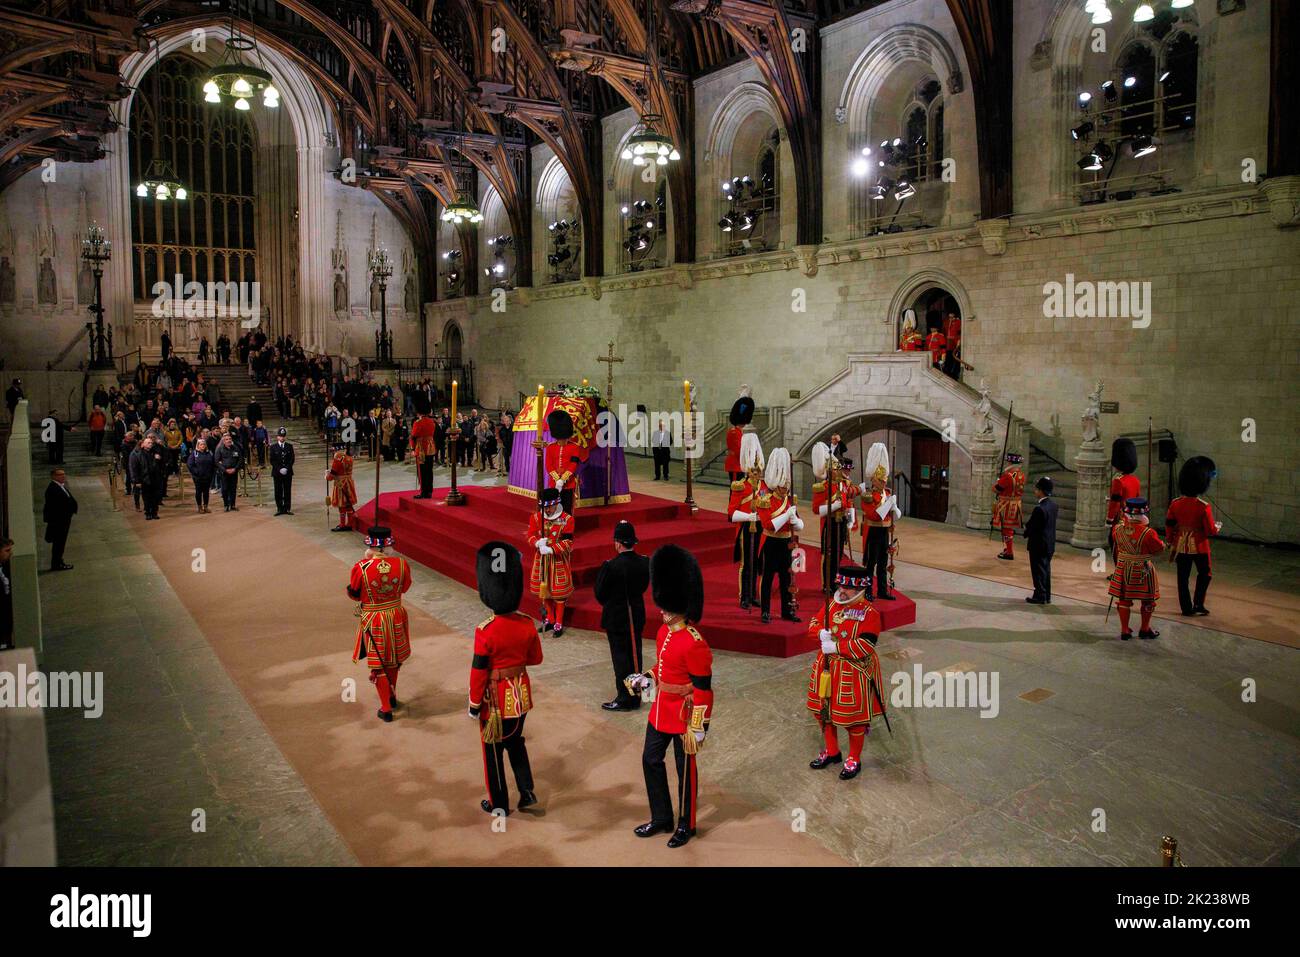 Die Wachablösung findet statt, wenn Mitglieder der Öffentlichkeit, die sich durch die Nacht anstellen, am Sarg Ihrer Majestät Königin Elizabeth II. Vorbeilaufen Stockfoto